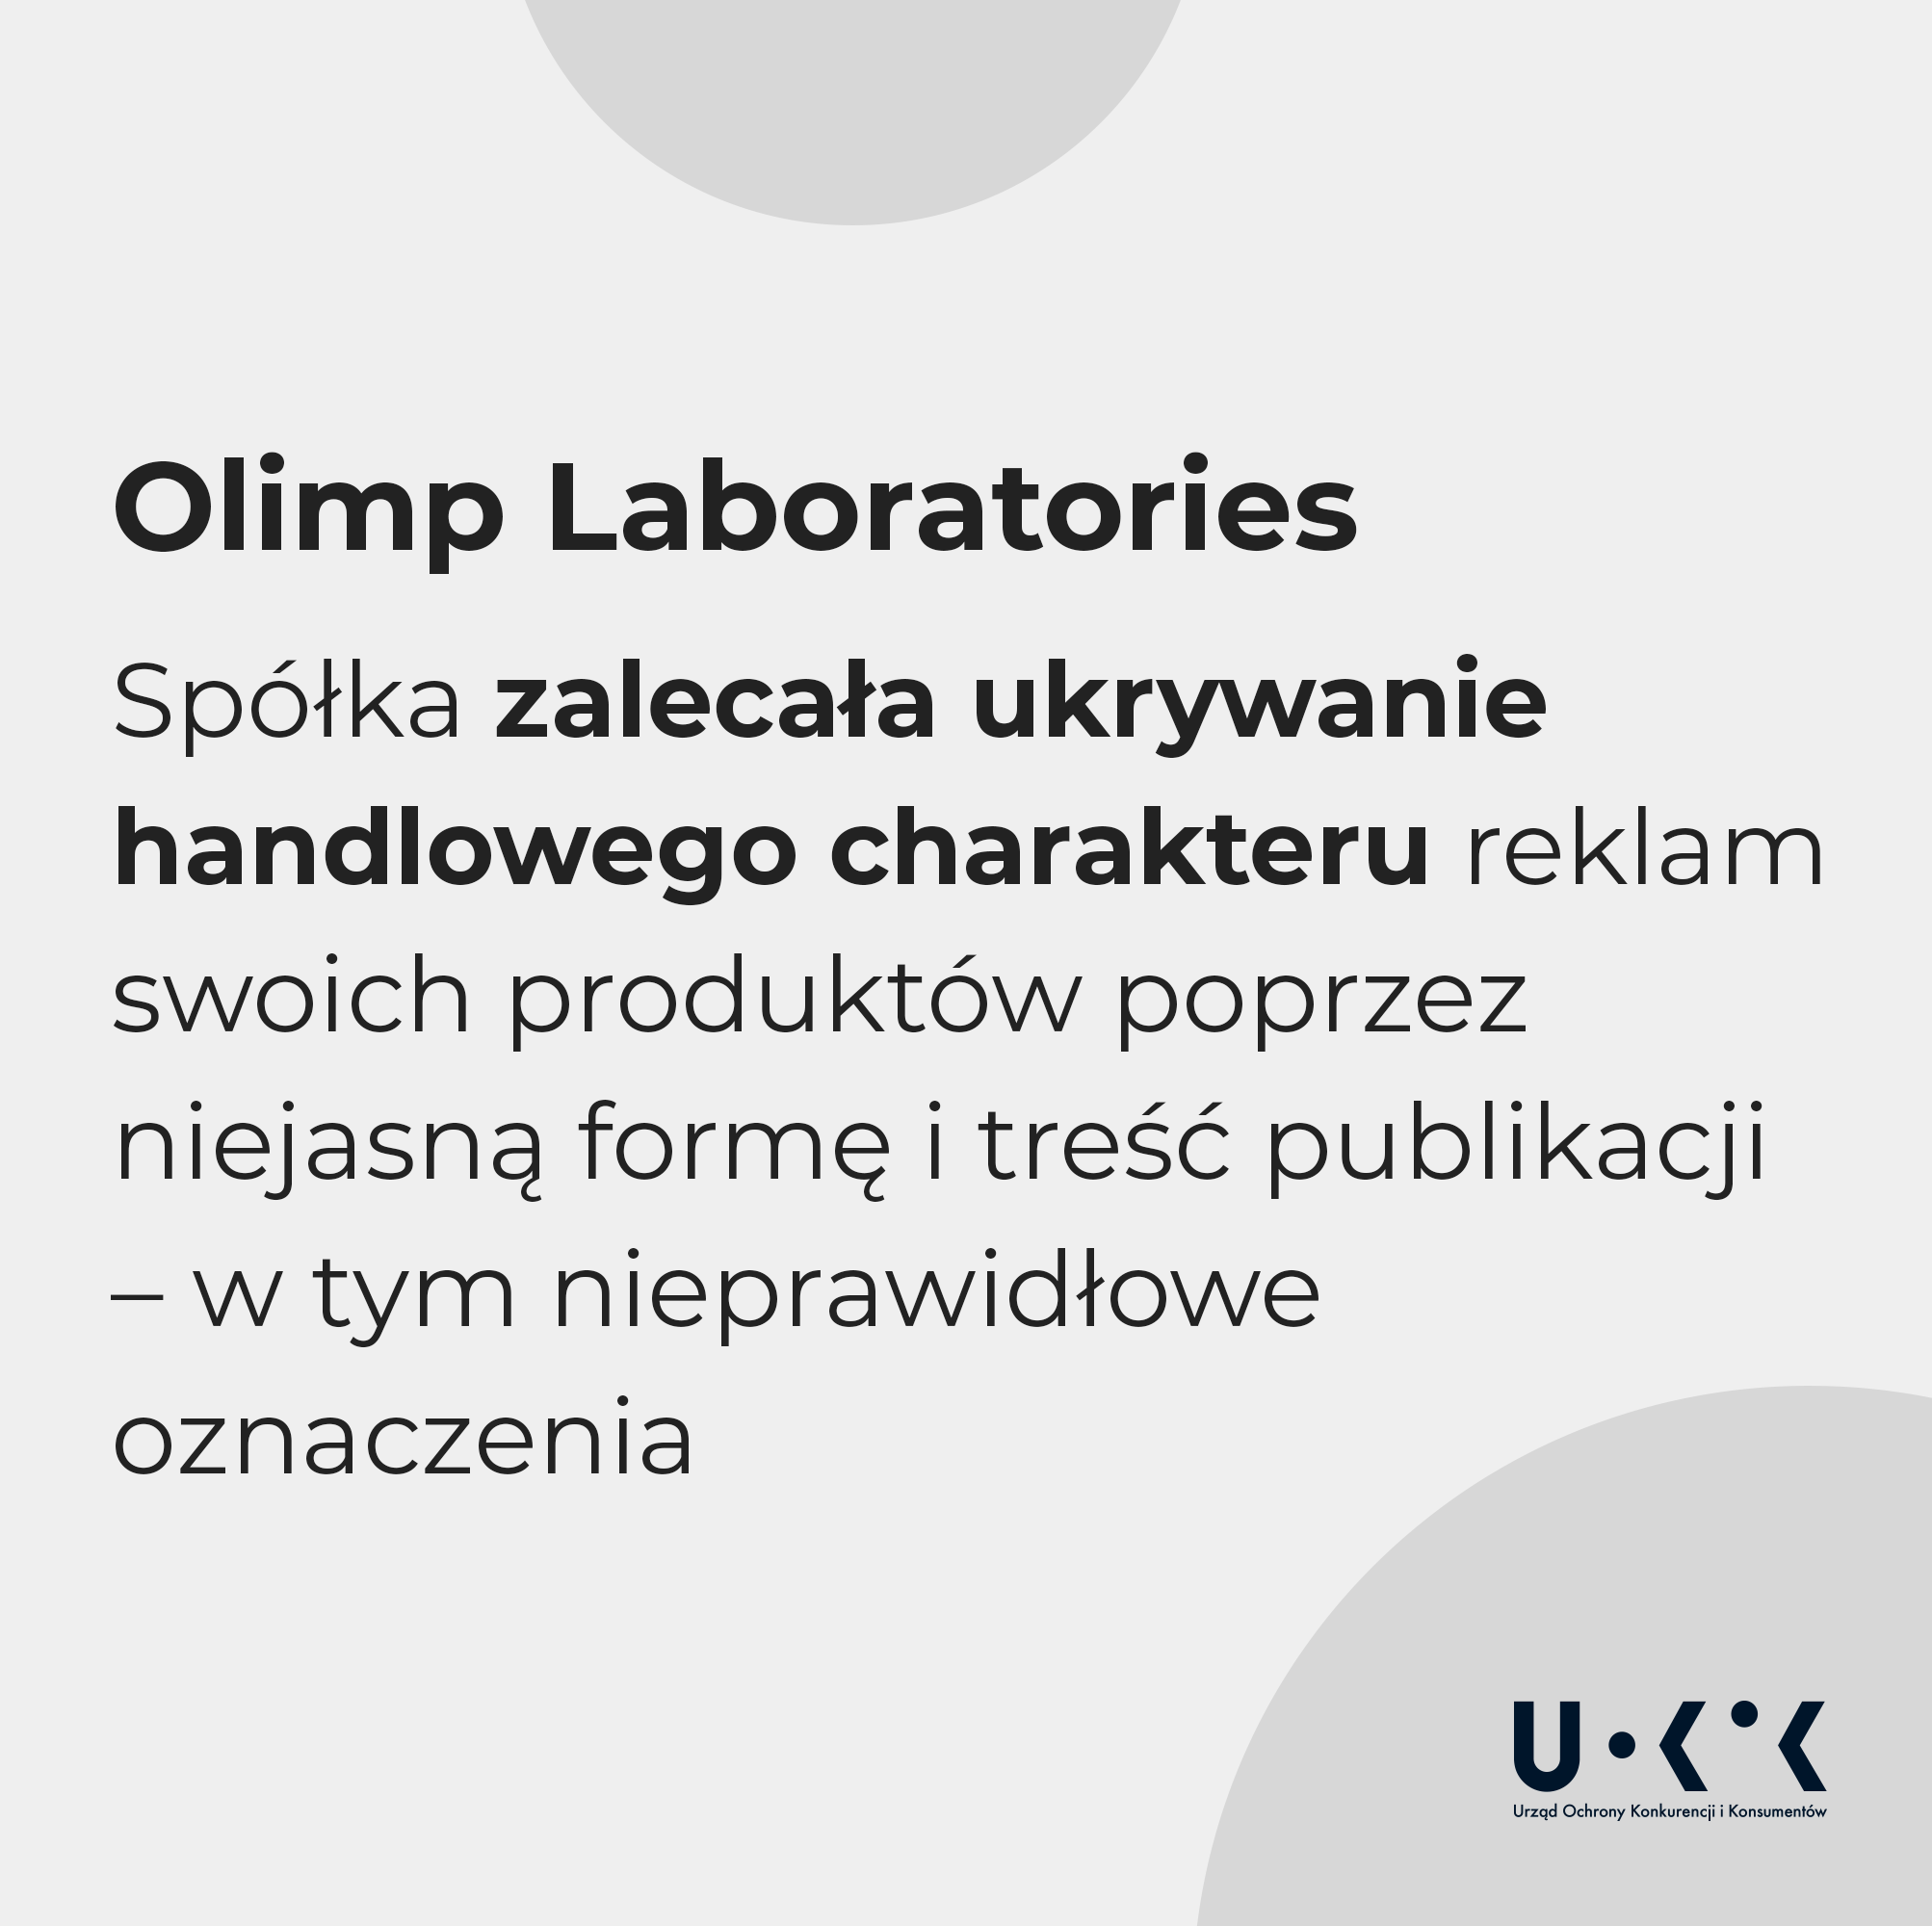 Olimp Laboratories Spółka zalecała ukrywanie handlowego charakteru reklam swoich produktów poprzez niejasną formę i treść publikacji - w tym nieprawidłowe oznaczenia. Poniżej logo UOKiK.